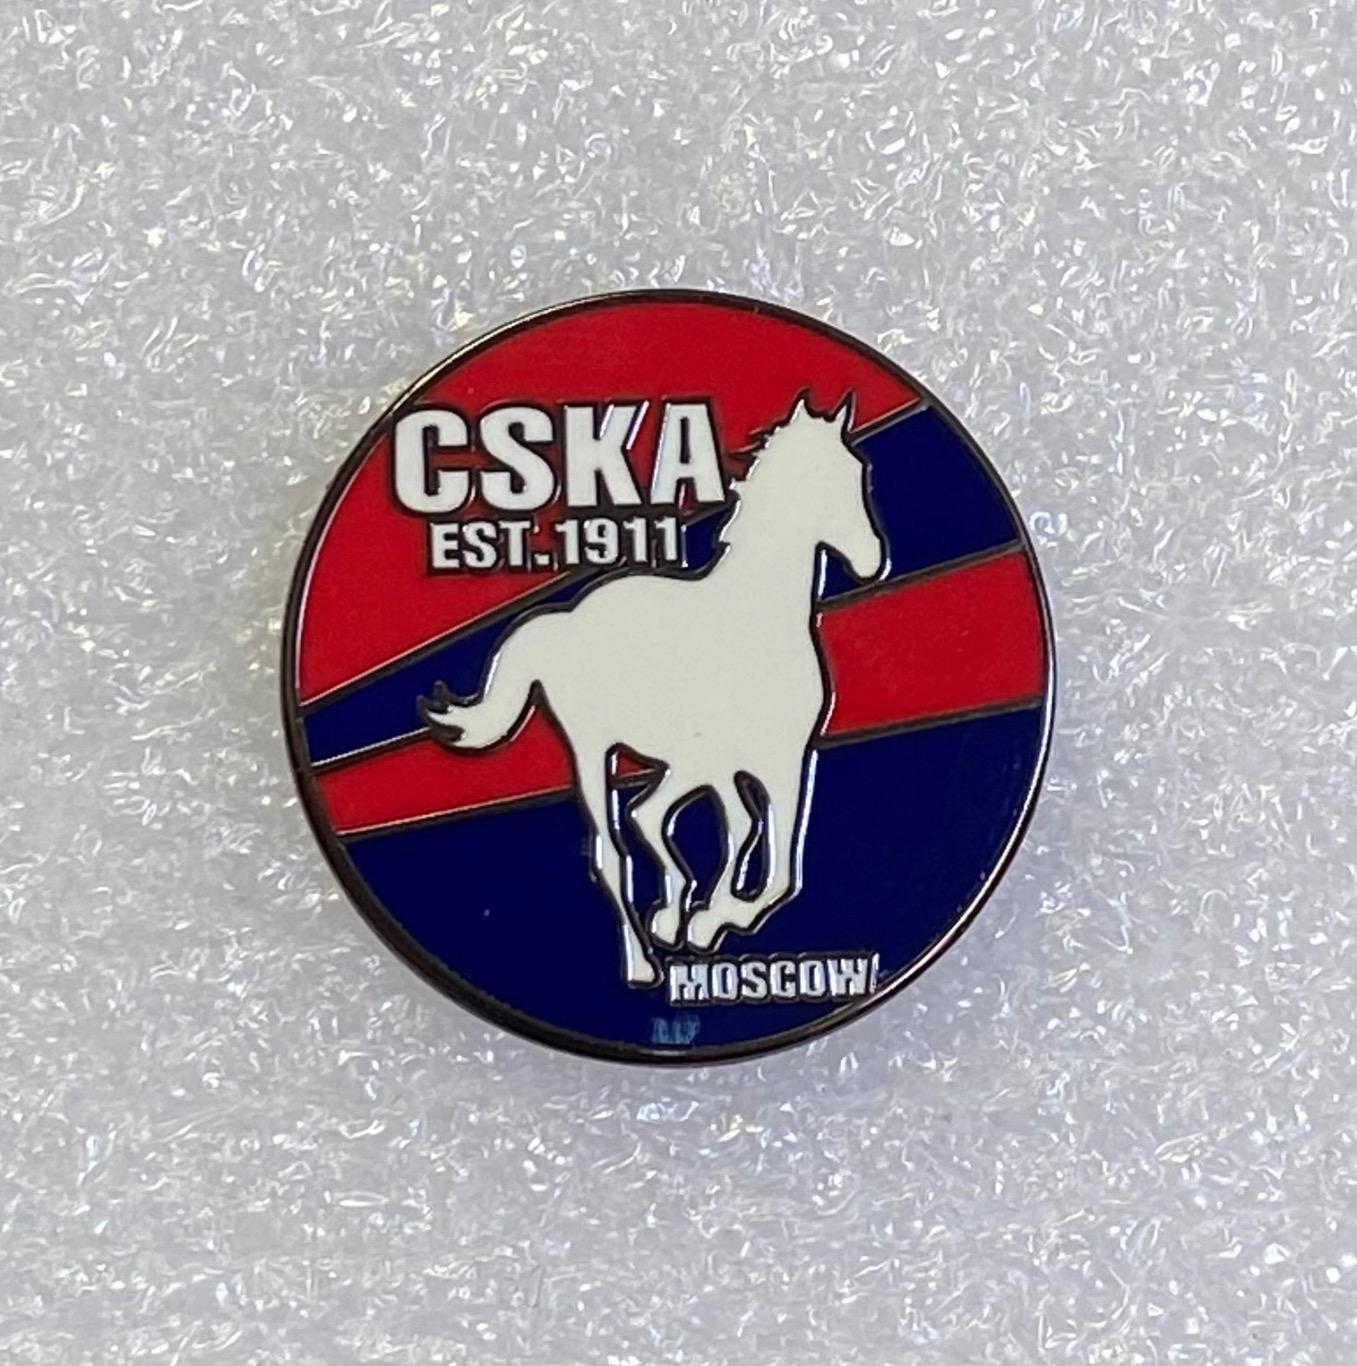 ЦСКА CSKA Moscow est.1911 конь, значок-1